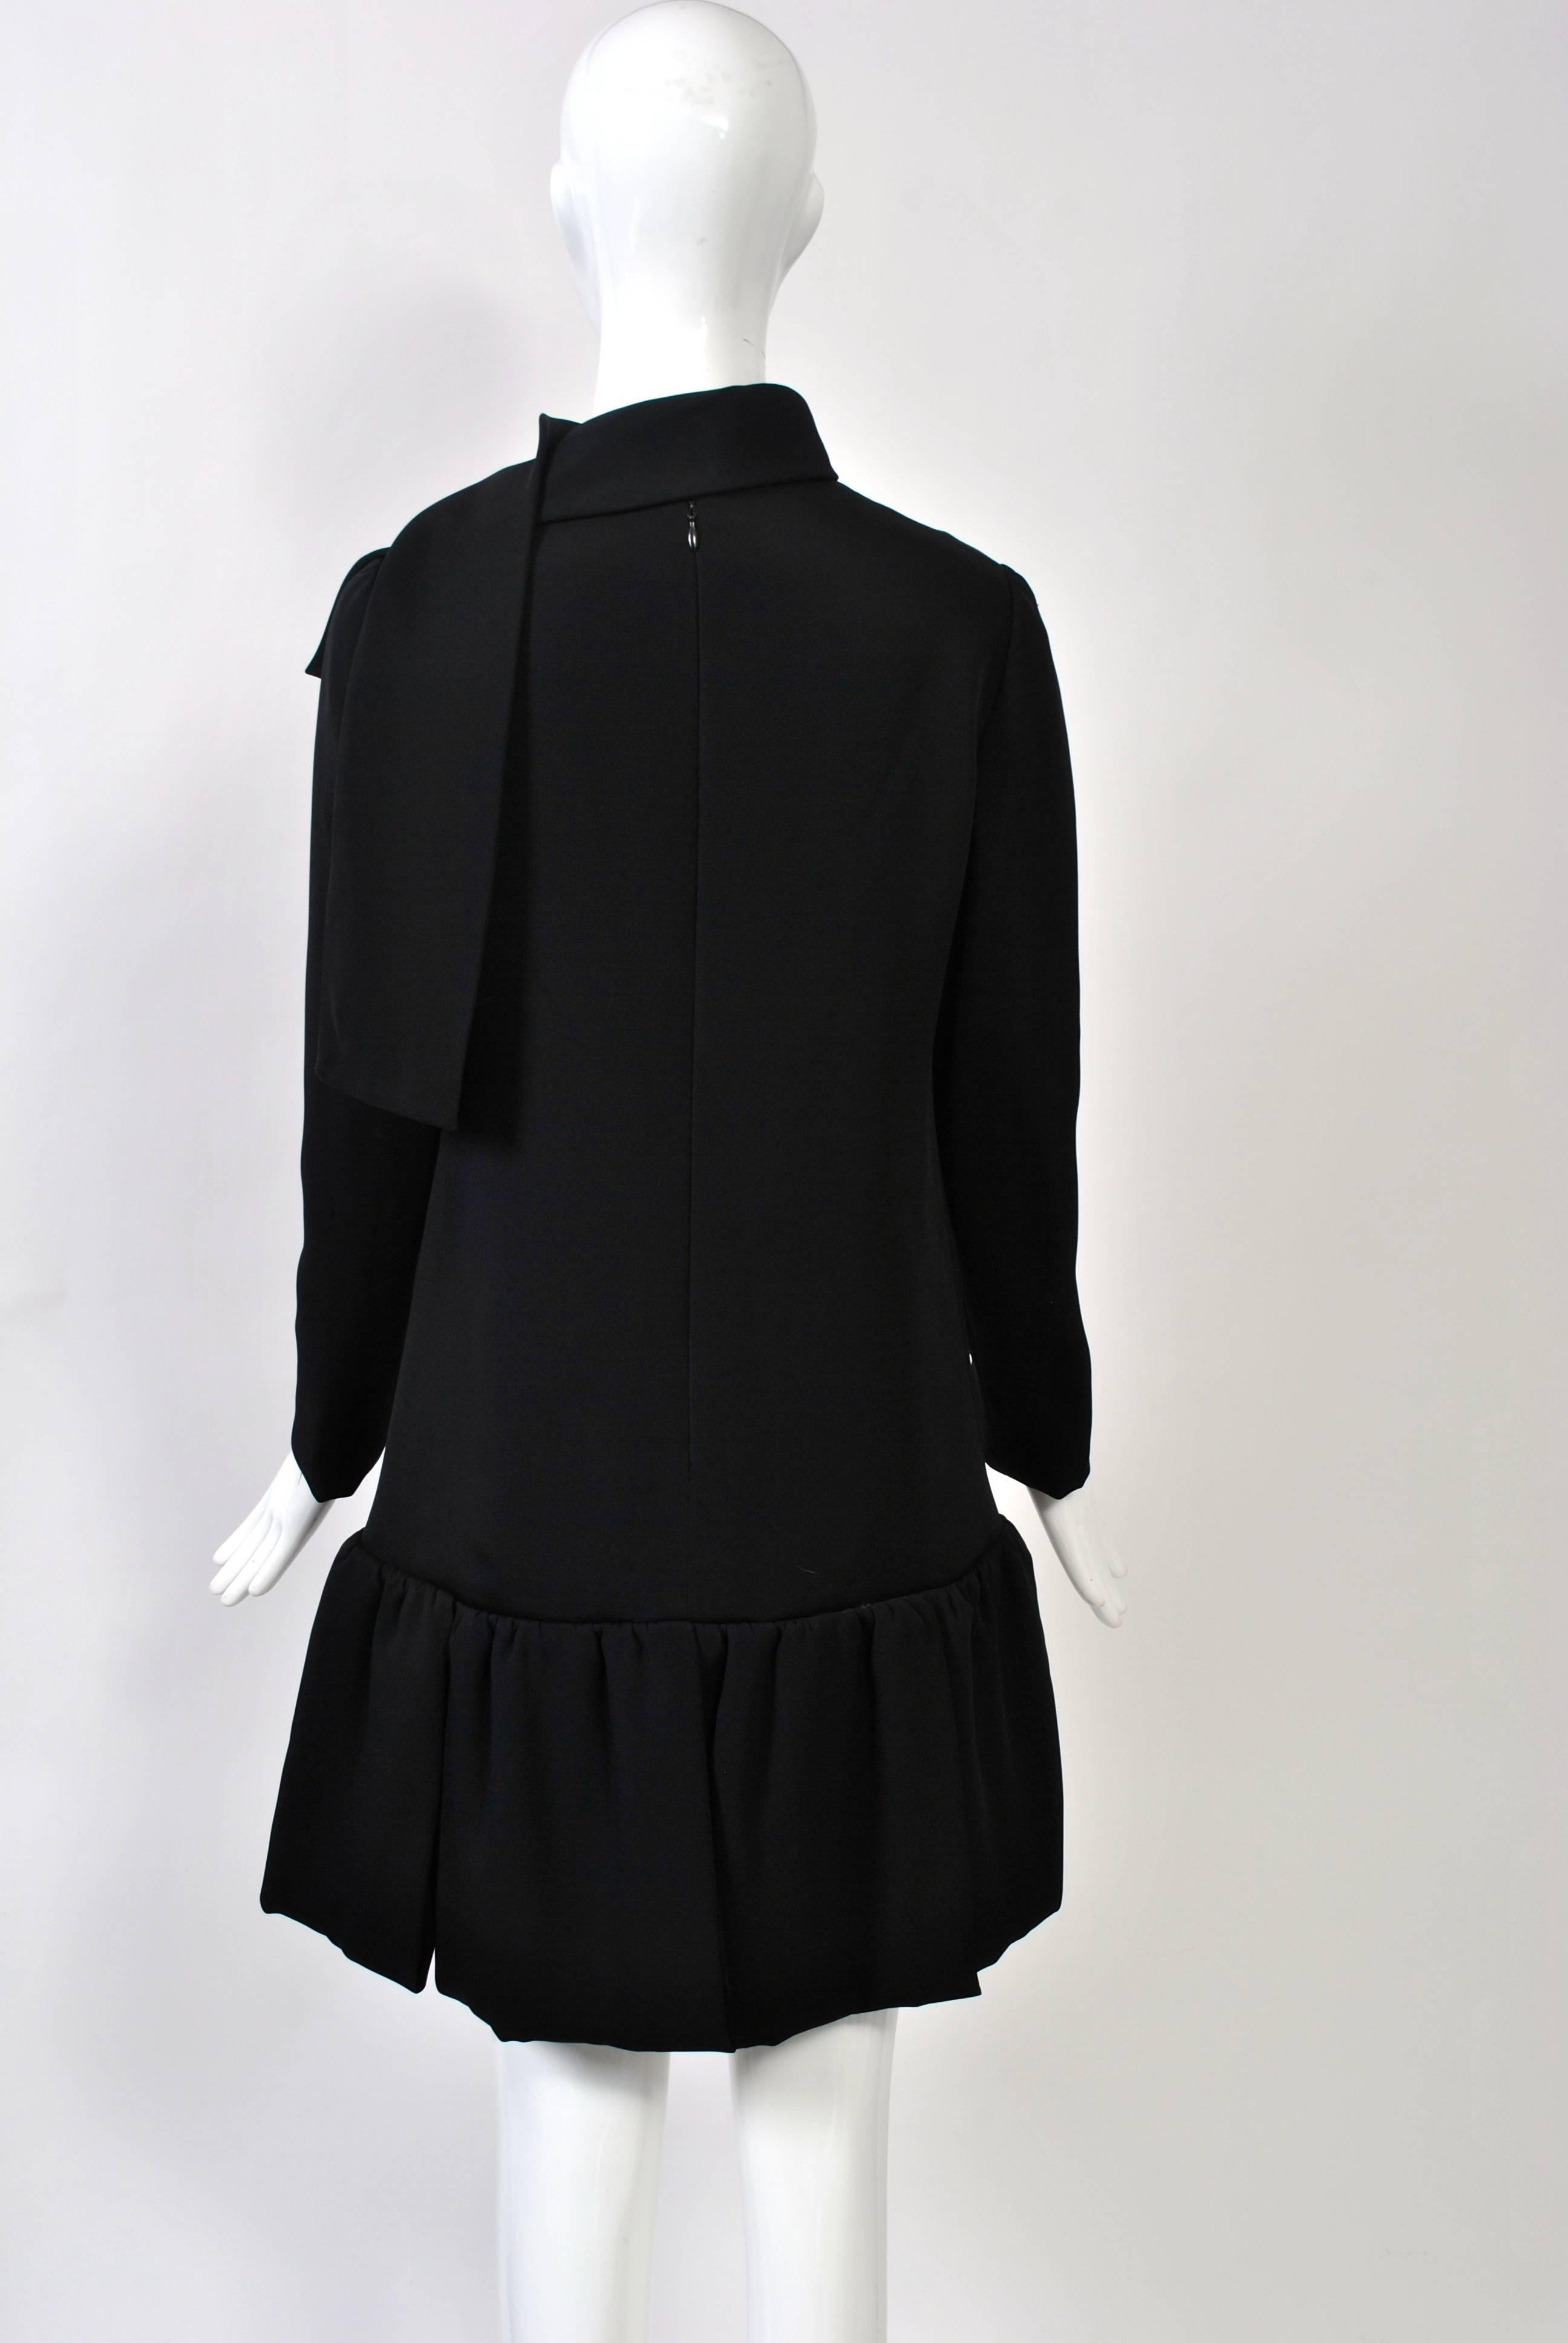 Women's Pierre Cardin 1960s Black Dress